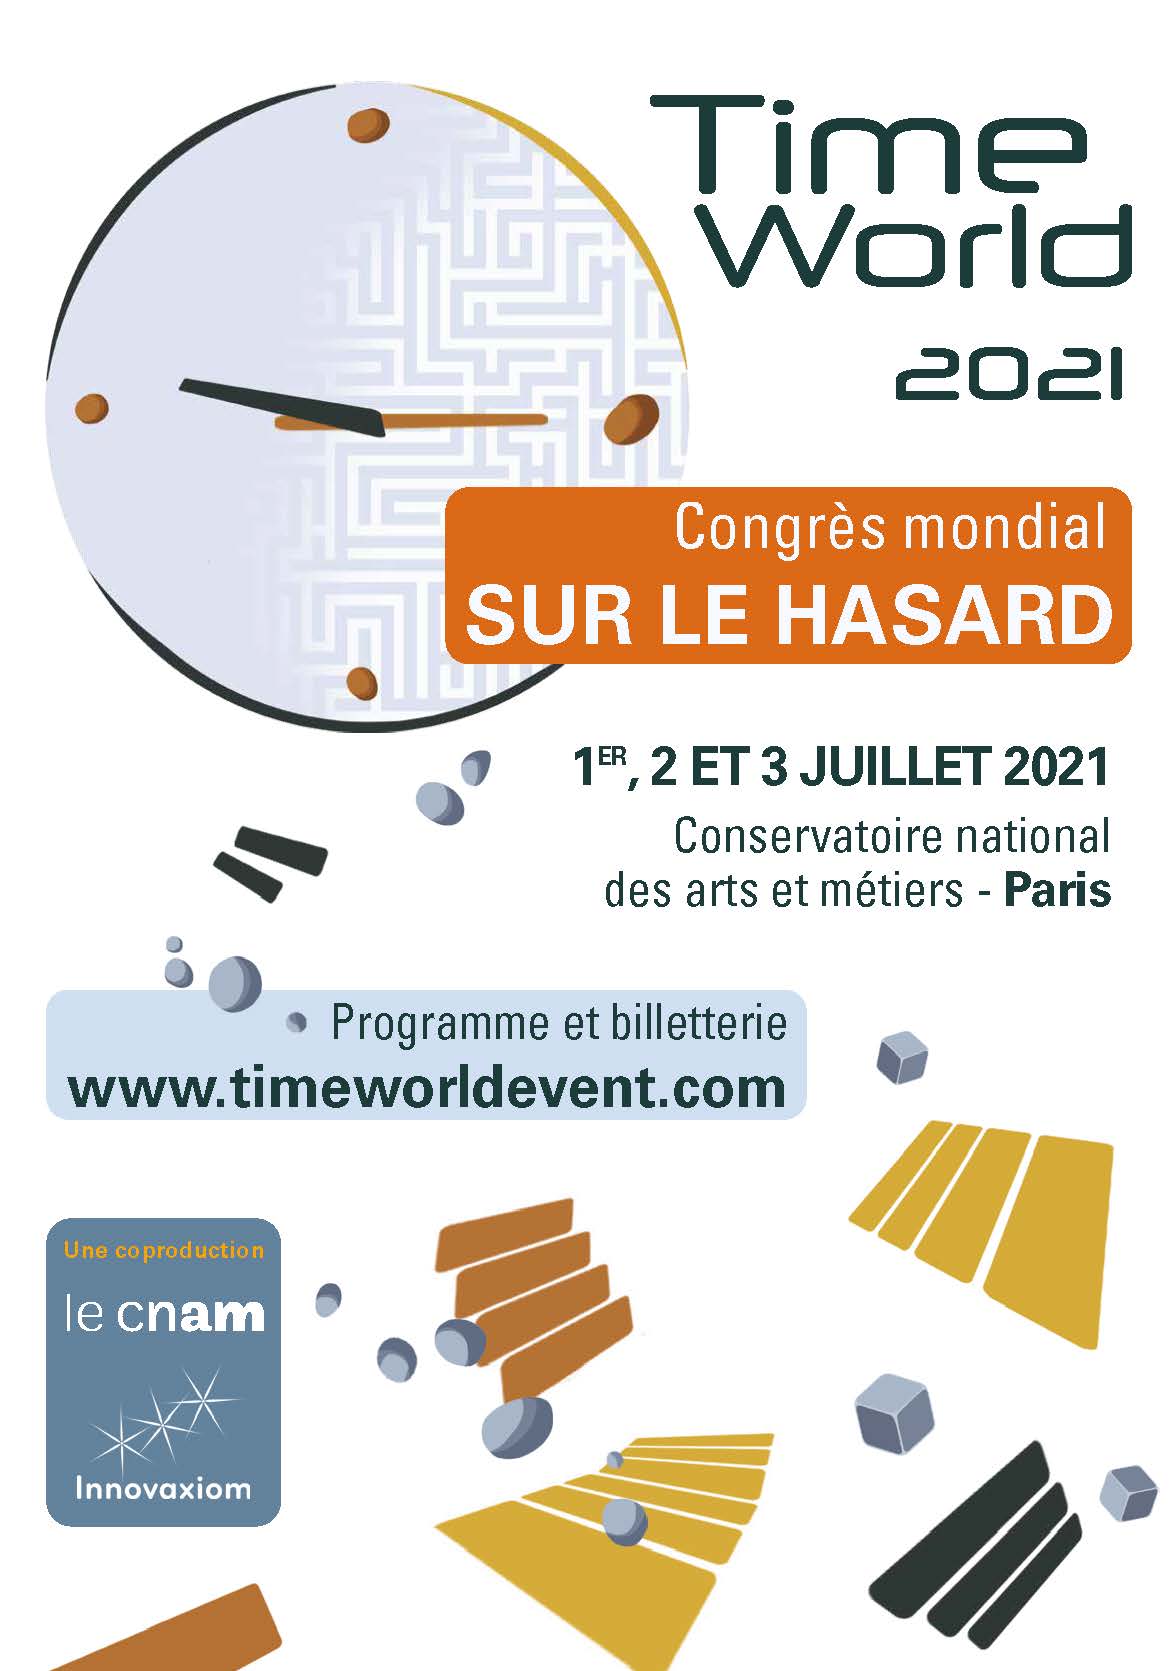 Timeworld 2021: congrès mondial sur le hasard 1, 2, 3 juillet 2021